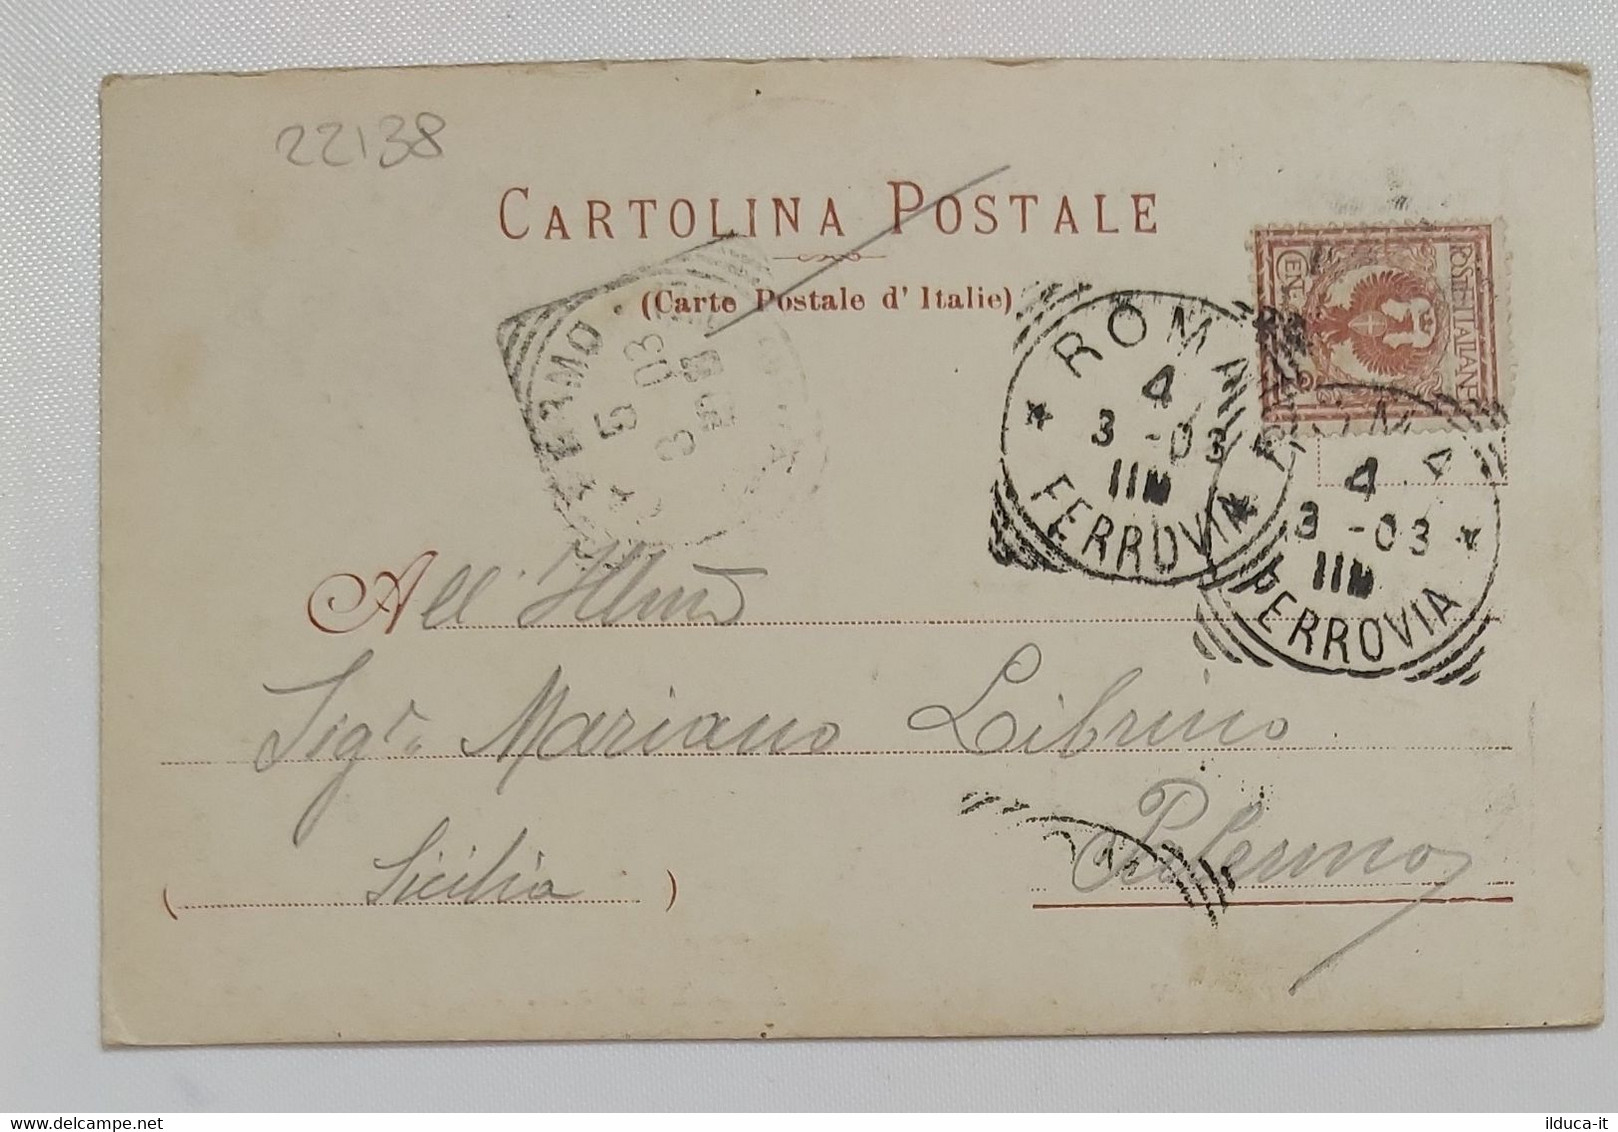 22138 Cartolina Illustrata - Ricordo Incoronazione Di Papa Leone XIII - VG 1903 - Papes